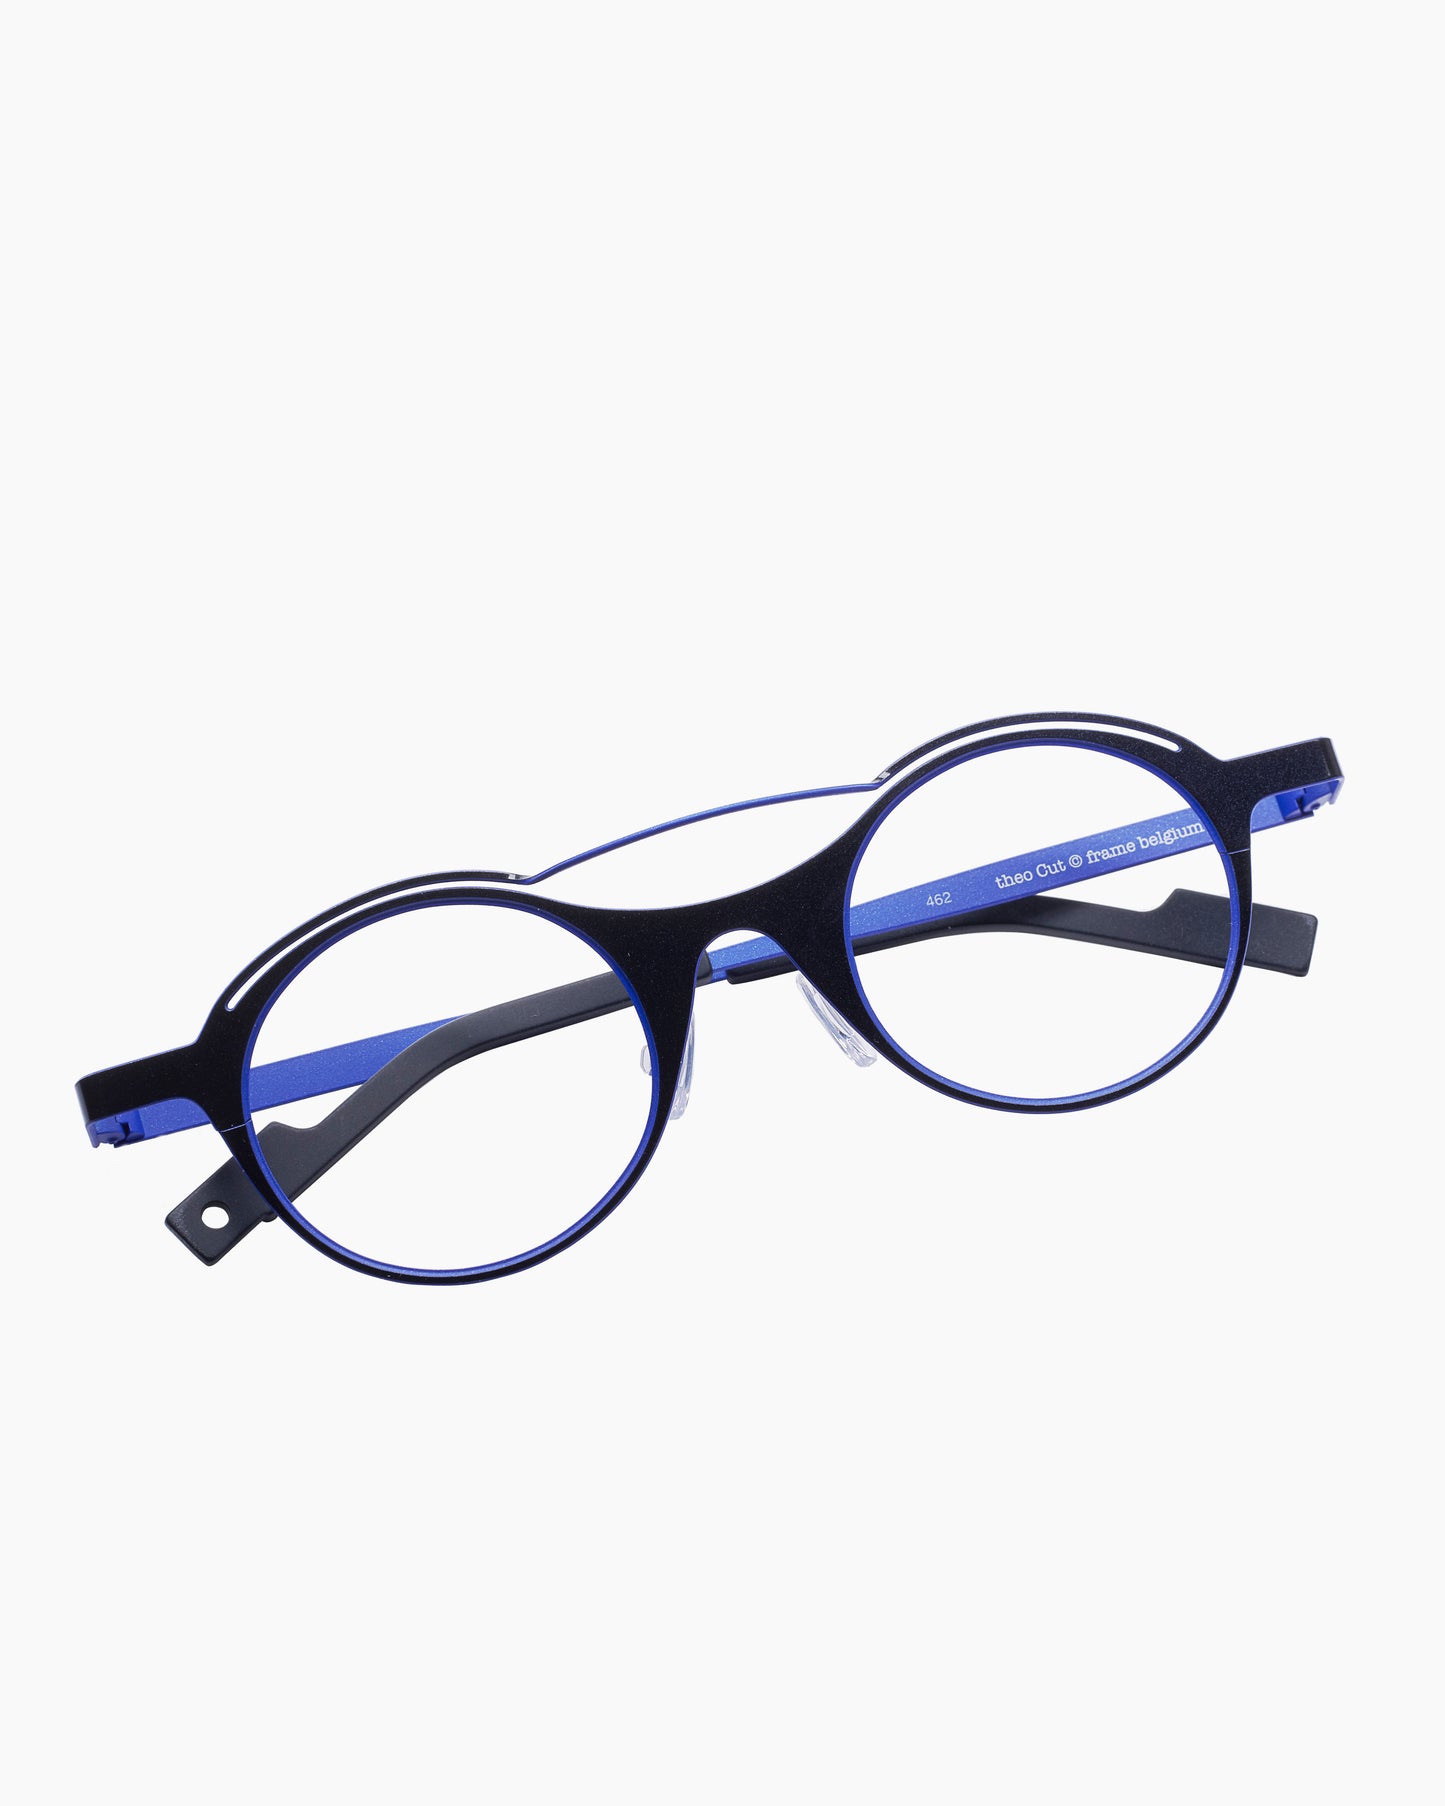 Theo - Cut - 462 | glasses bar